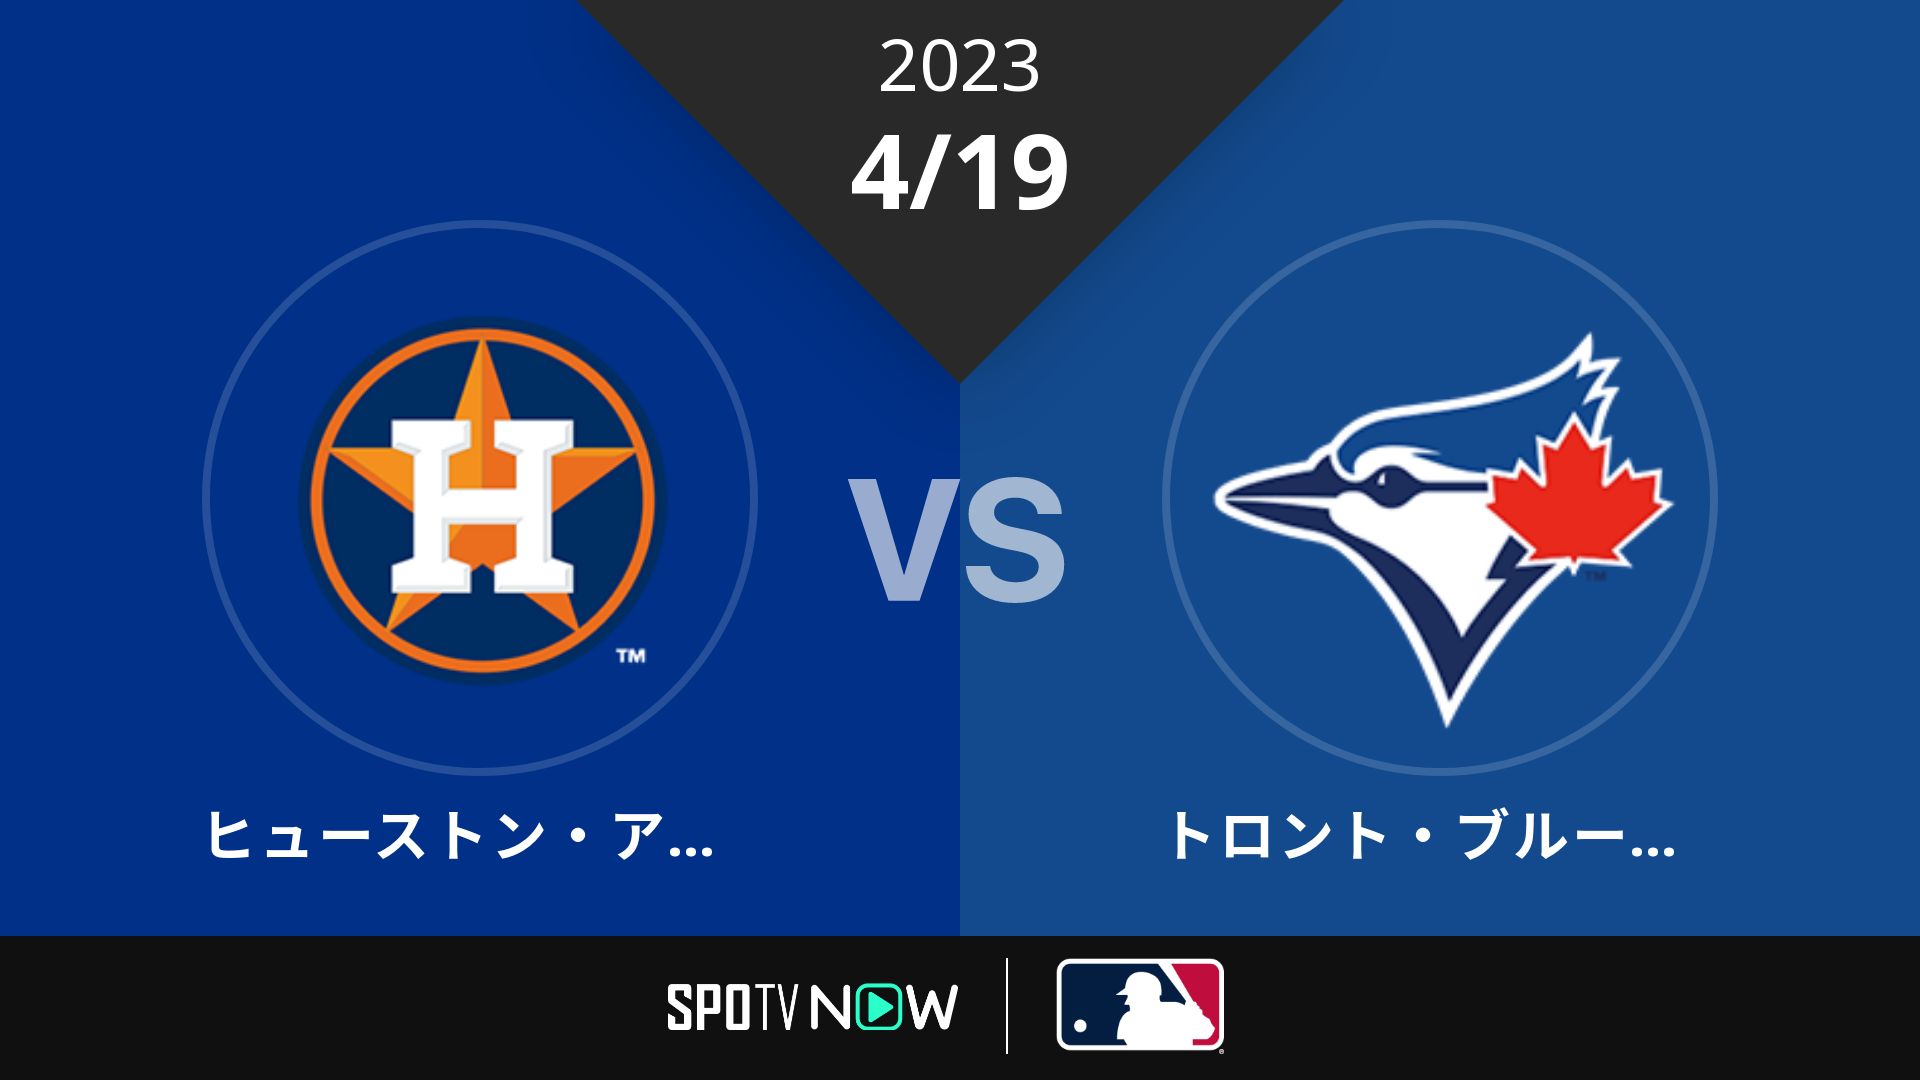 2023/4/19 アストロズ vs ブルージェイズ [MLB]